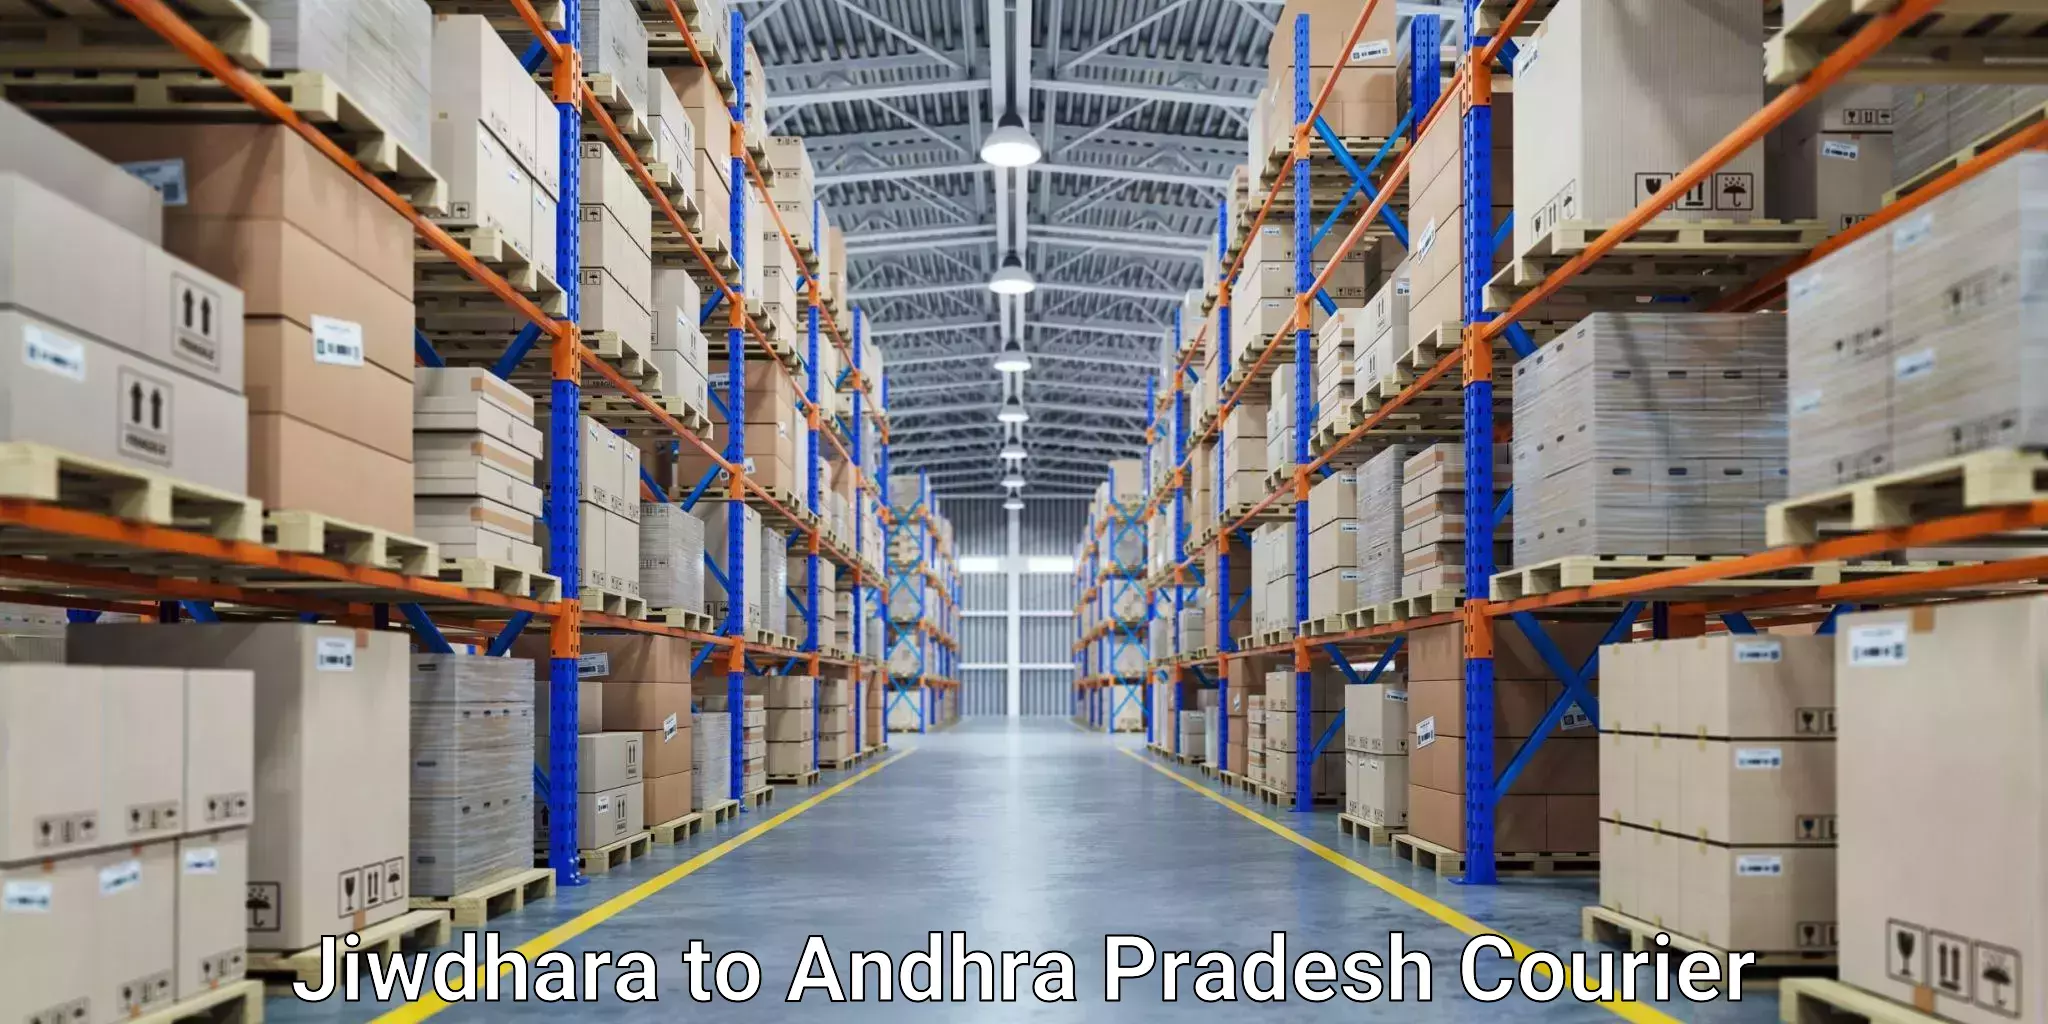 Express postal services Jiwdhara to Andhra Pradesh